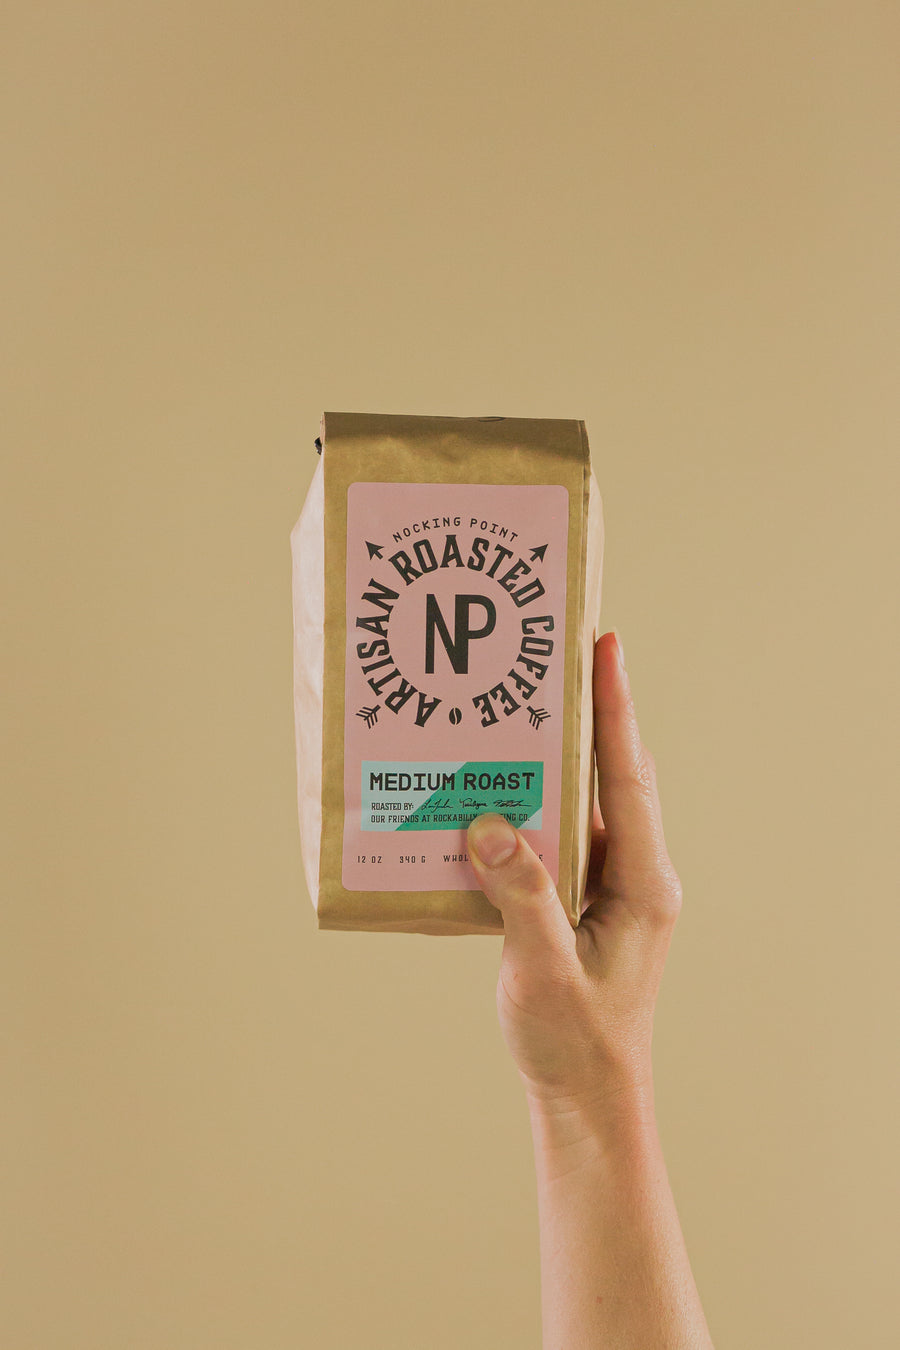 NP Artisan Roasted Coffee - Medium Roast